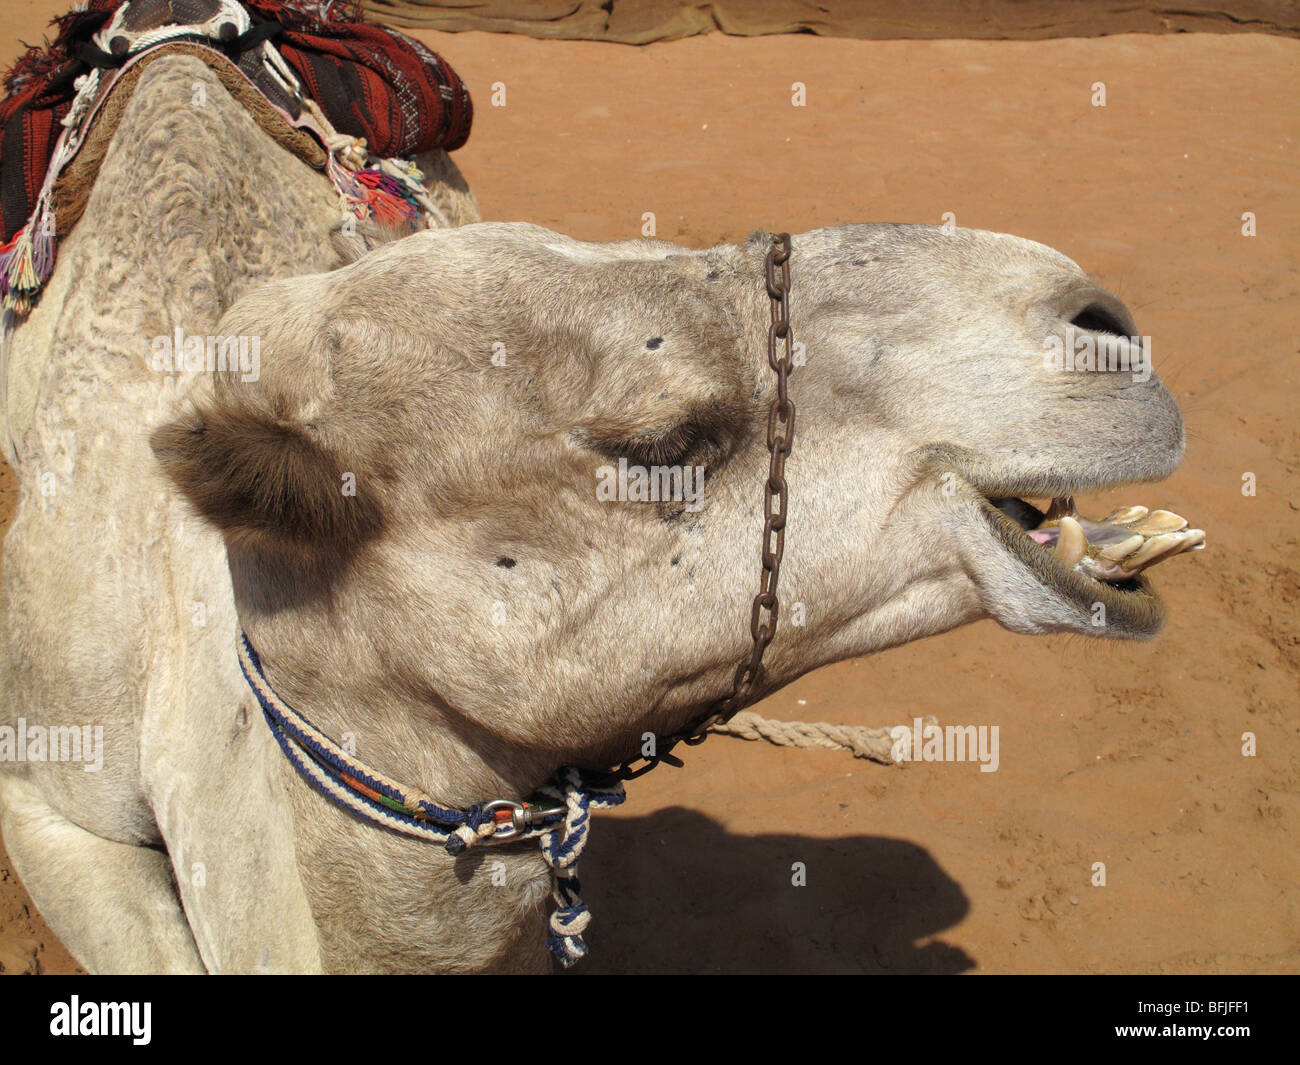 Cabeza y dientes de un dromedario camello usada para montar a caballo, Abu Dhabi, Emiratos Árabes Unidos Foto de stock